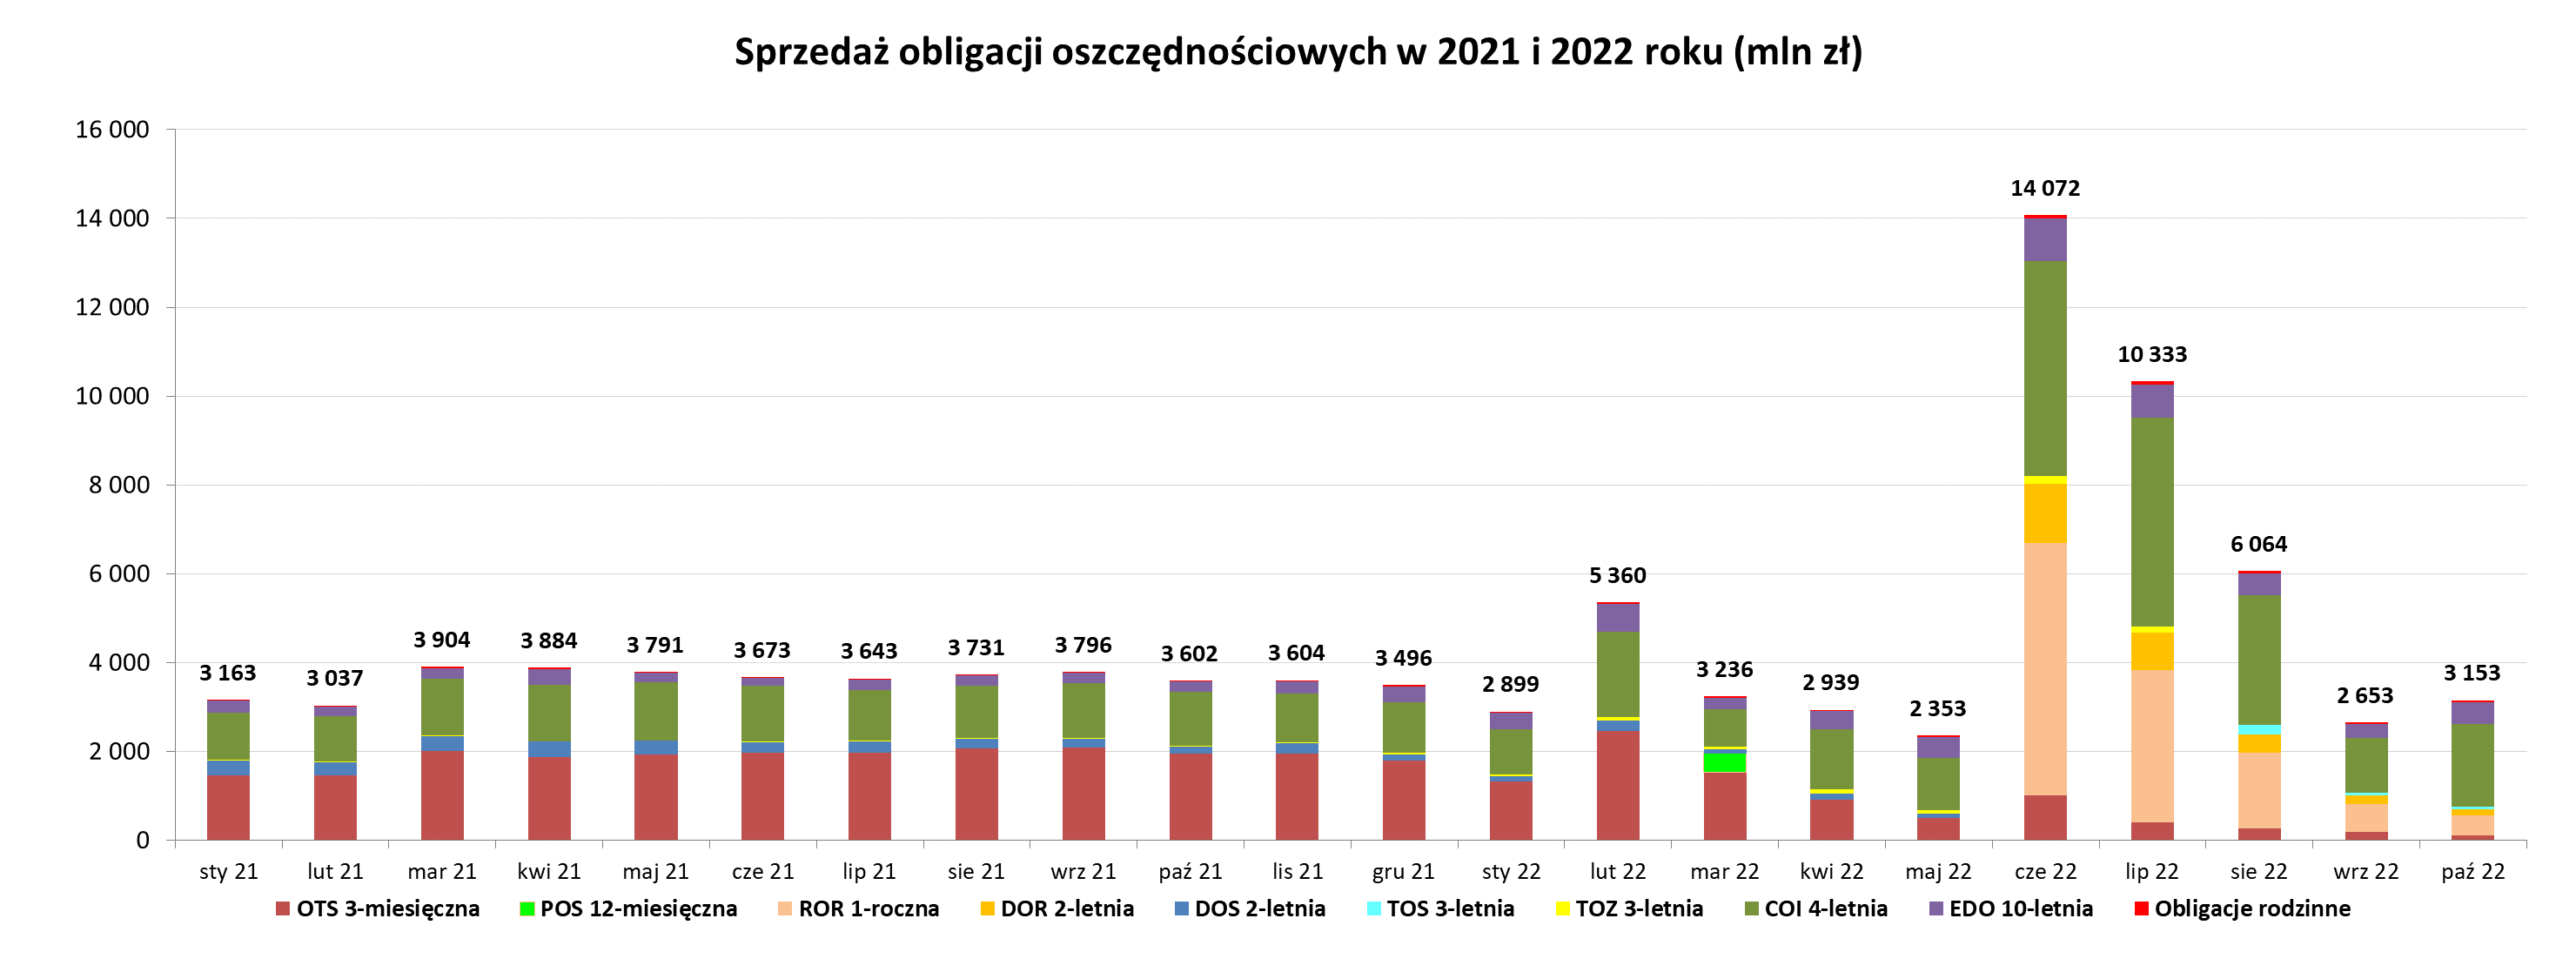 Wykres słupkowy przedstawiający sprzedaży obligacji oszczędnościowych w październiku 2022